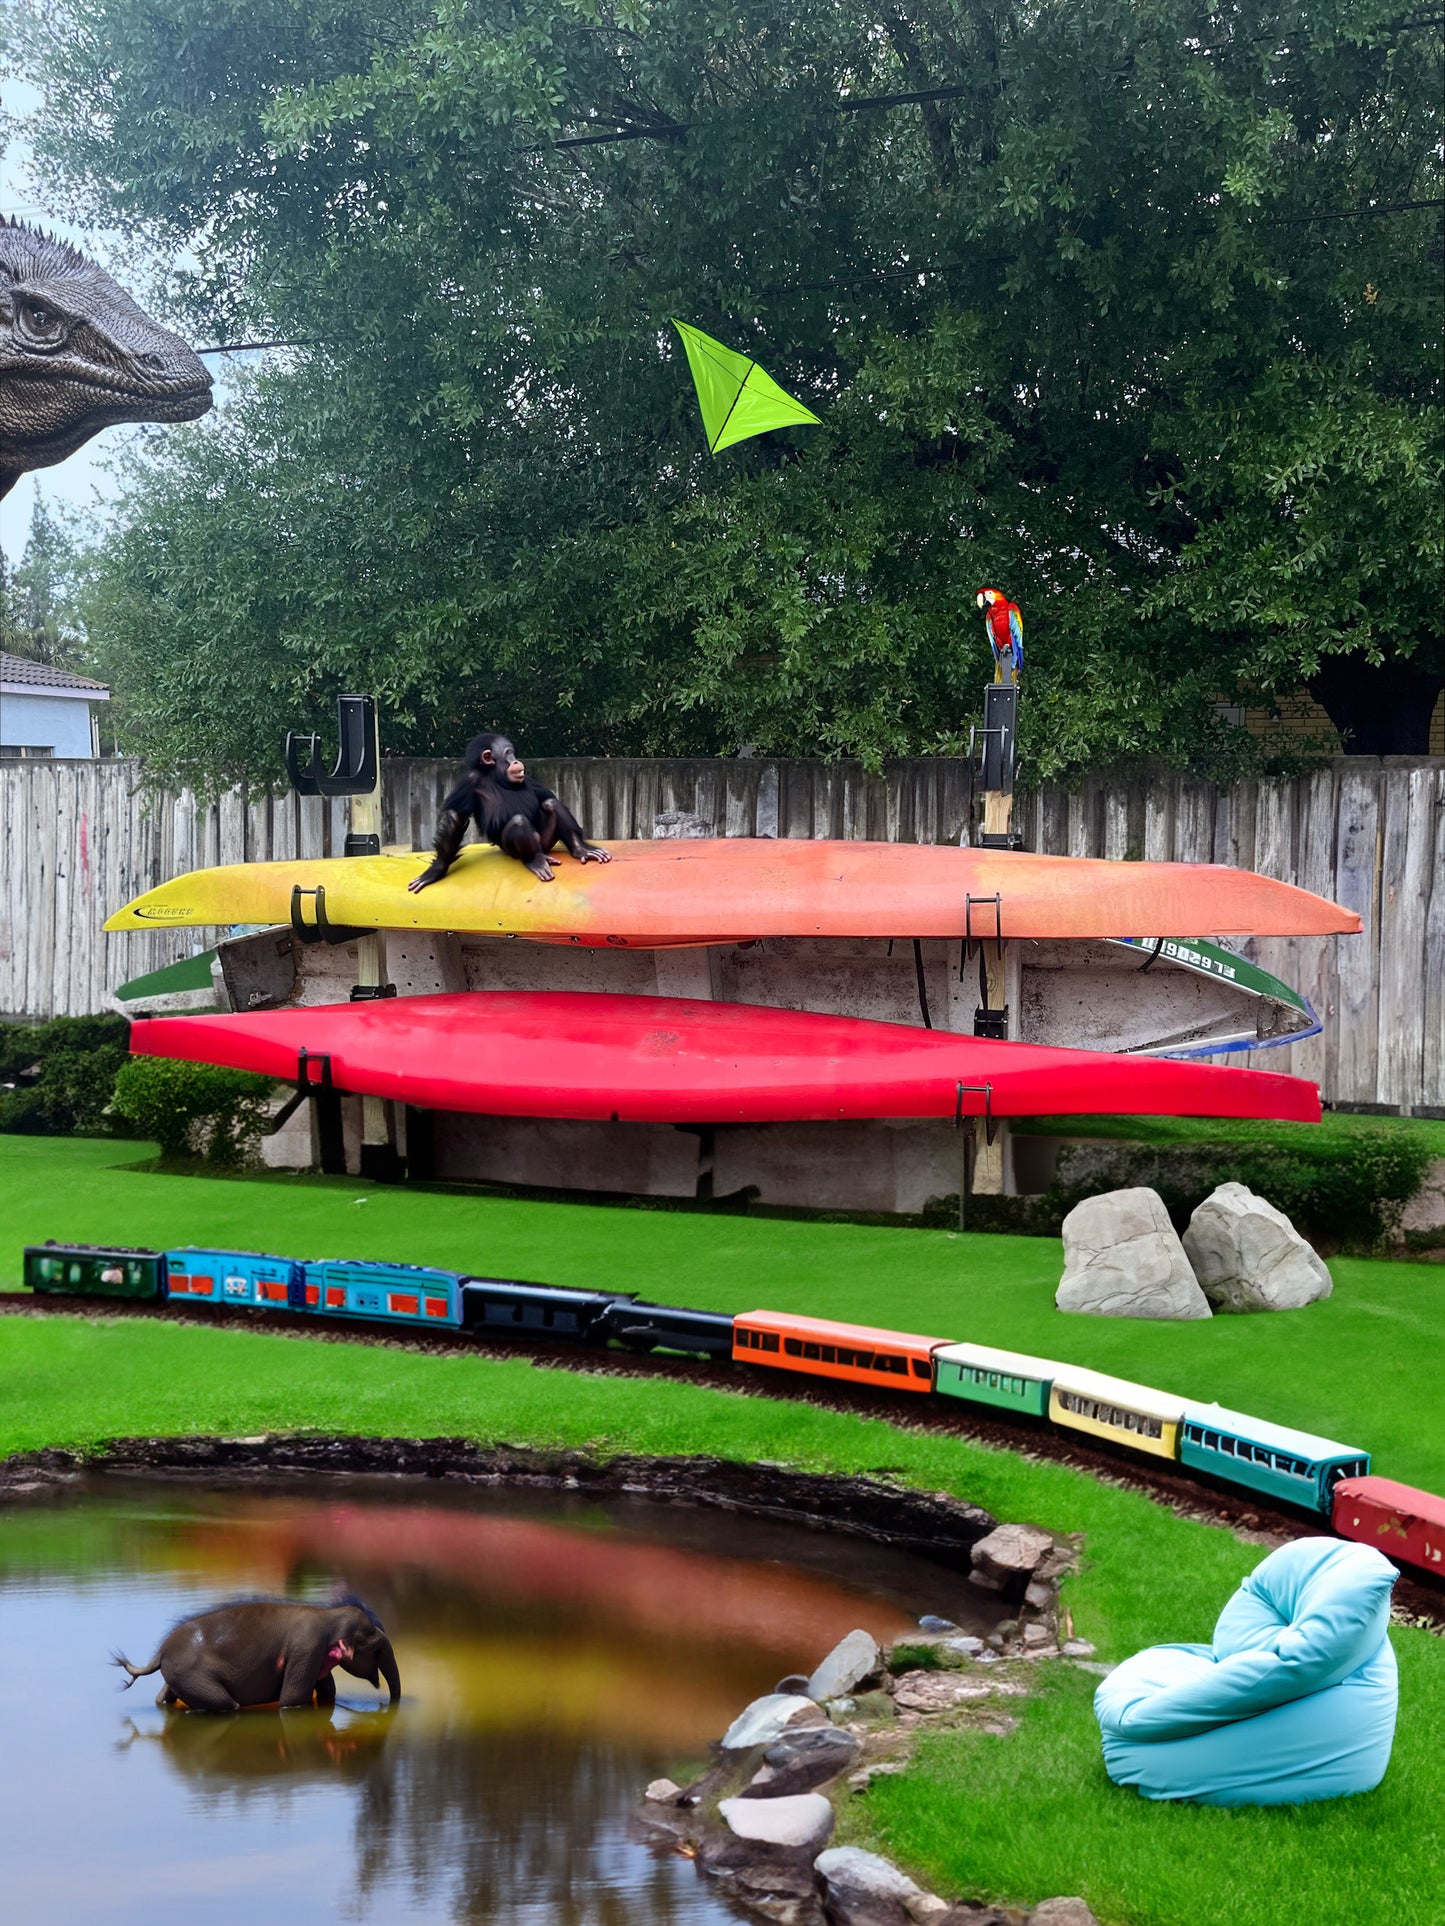 Kayak/Board Racks - Sold in Pairs